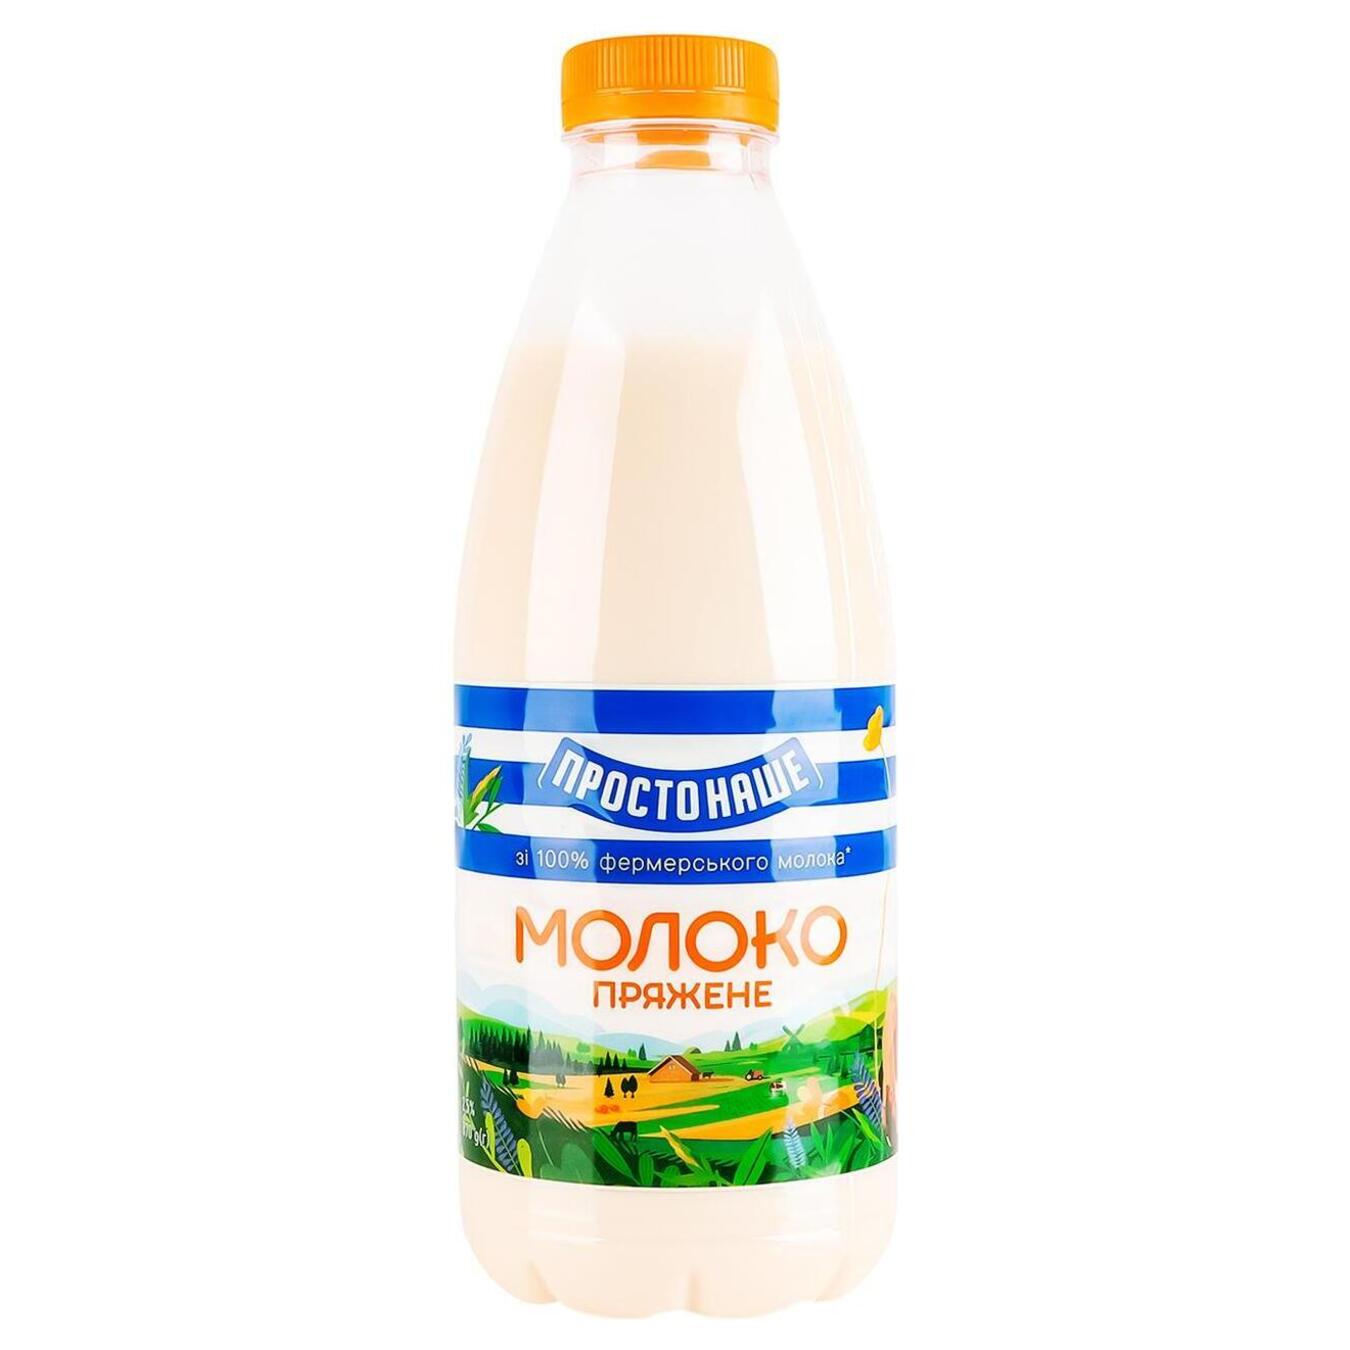 Молоко пряжене Простонаше 2,5% пет 870